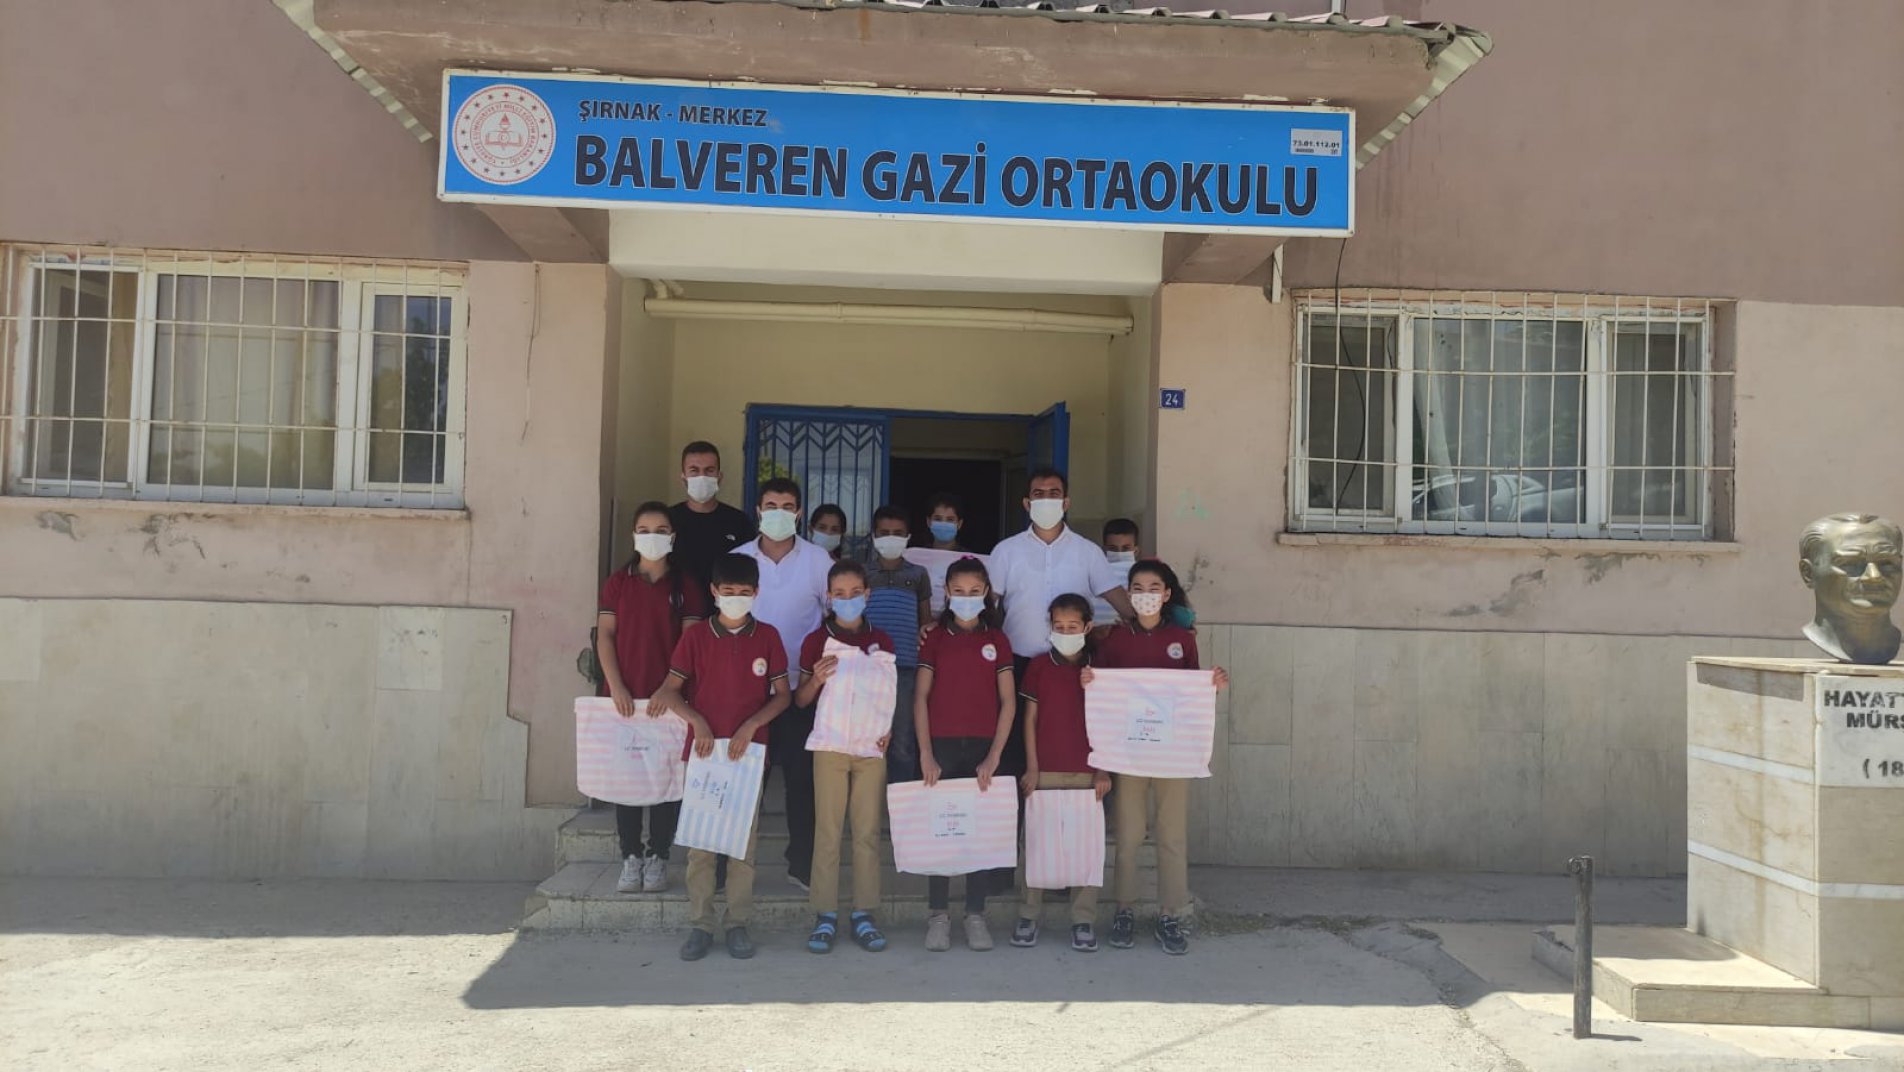 Balveren Gazi Ortaokulu Öğrencilerine Giyim ve Kırtasiye Hediyesi